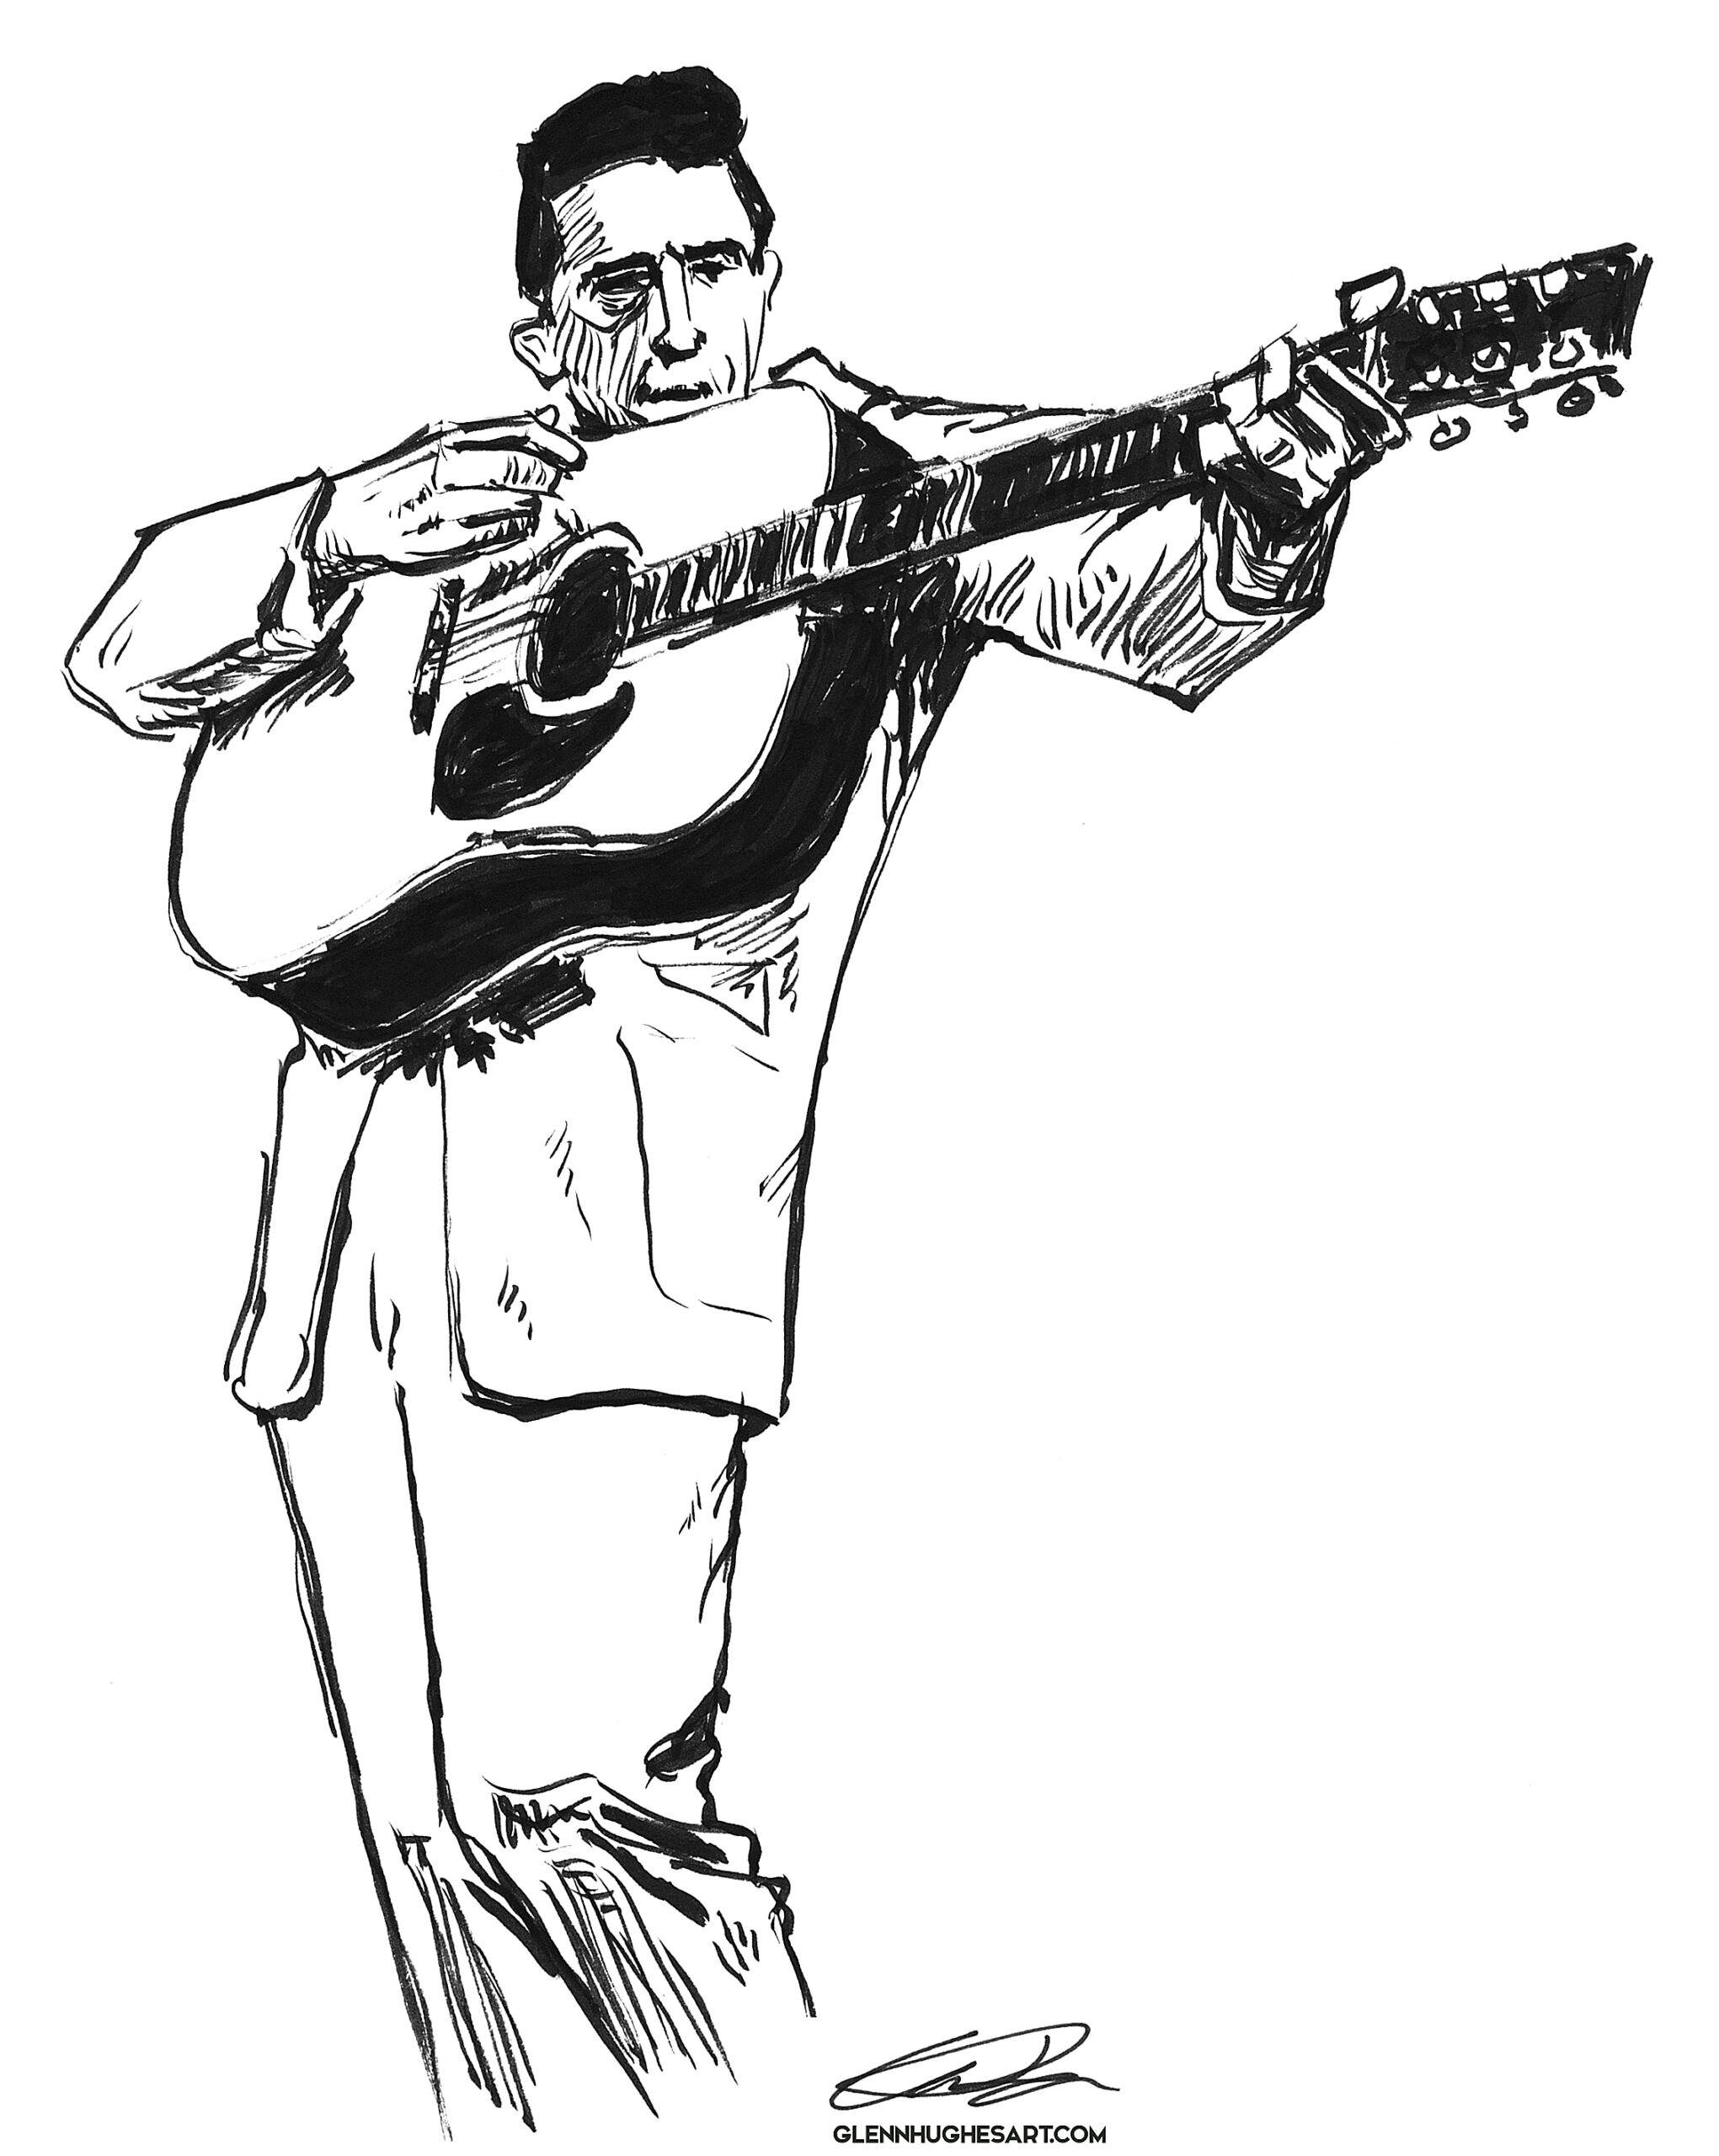 Johnny Cash - guitar